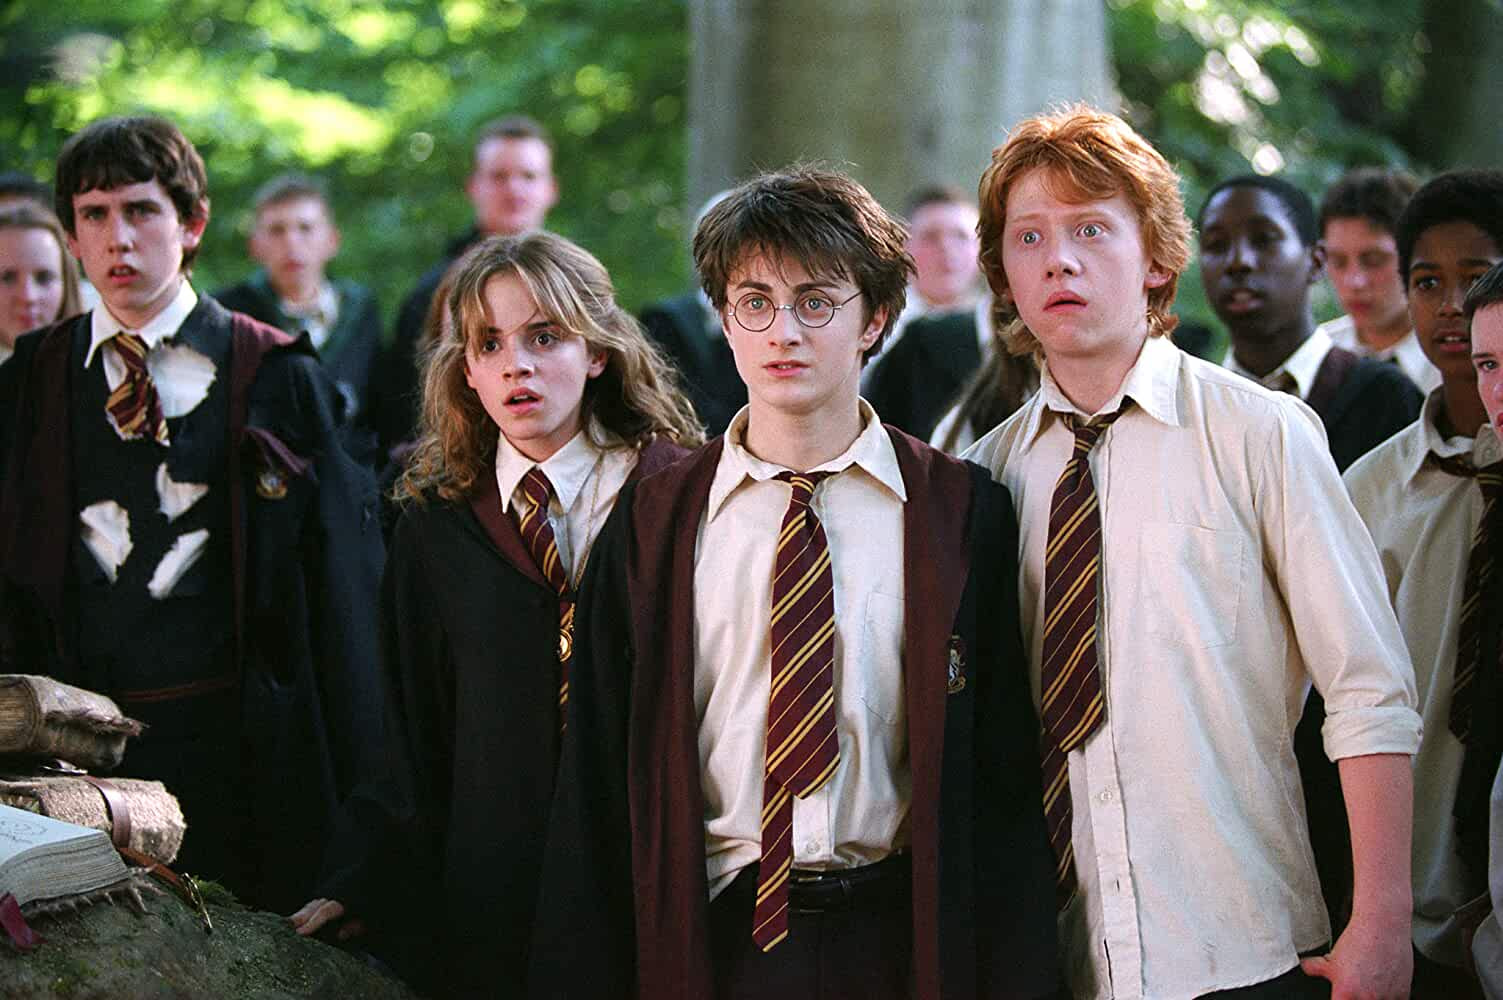 Harry Potter Series: Emma Watson, Daniel Radcliffe, Rupert Grint